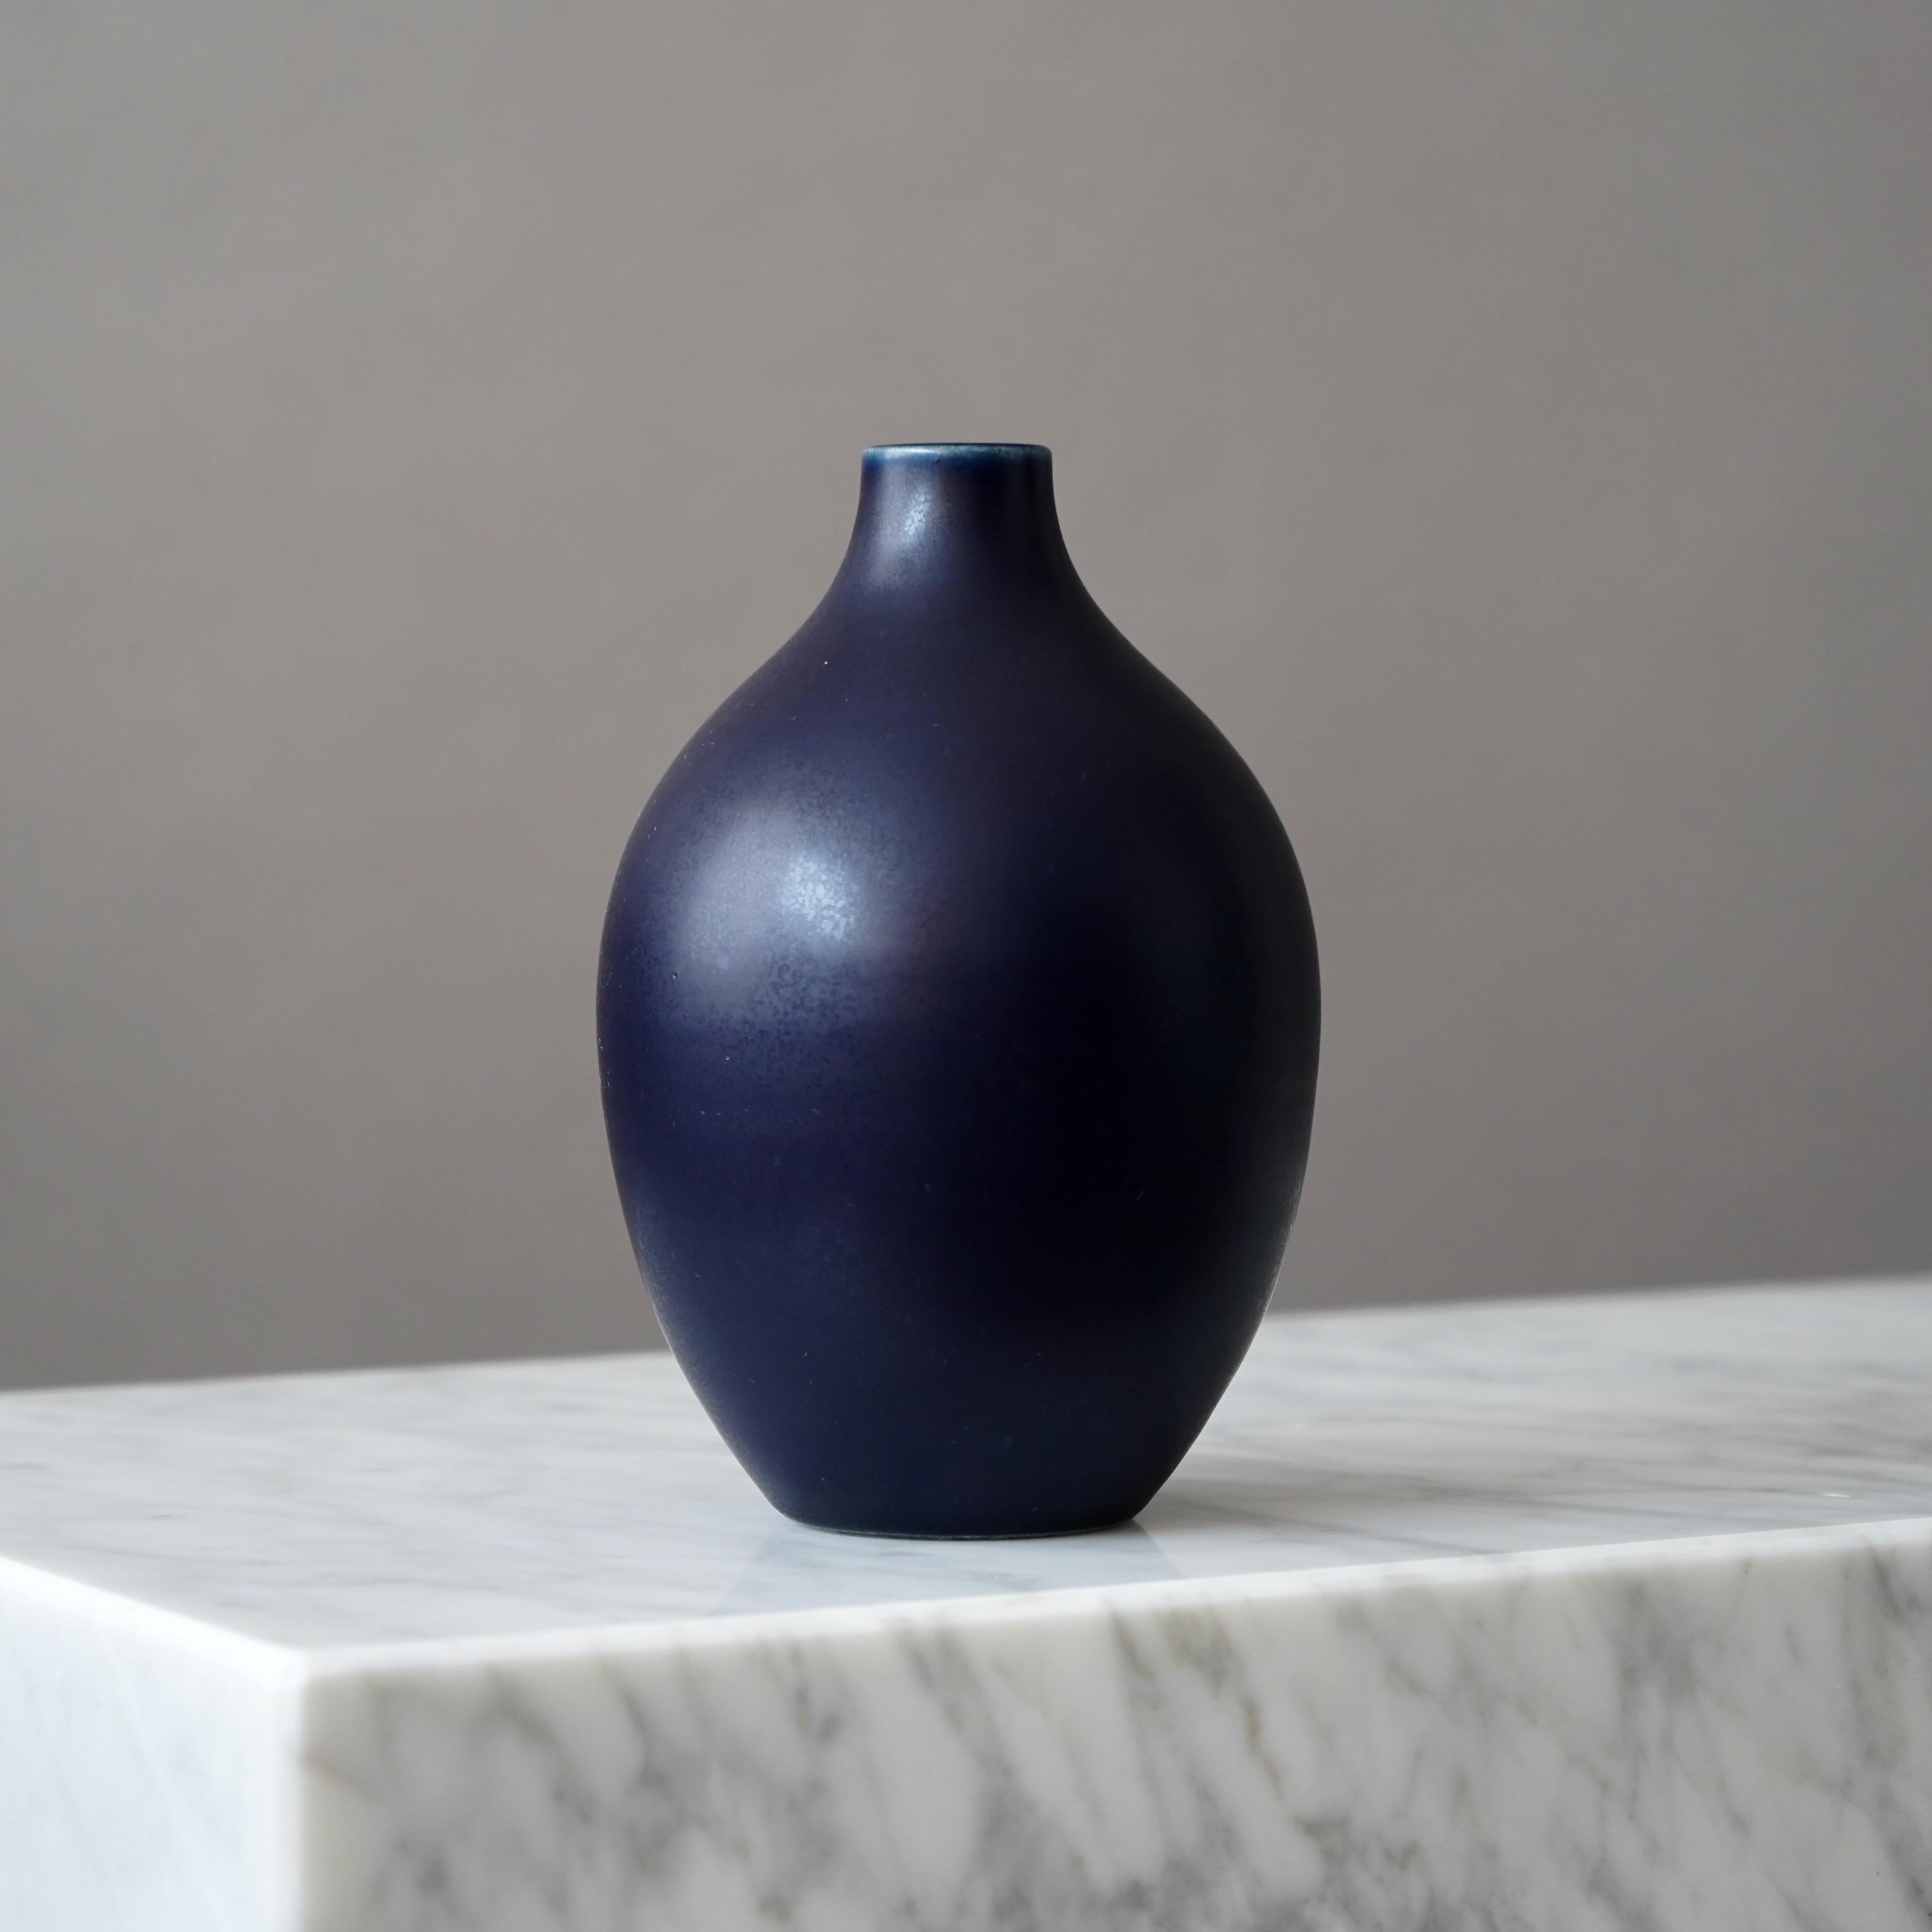 Magnifique vase en grès fabriqué par les maîtres céramistes Erich et Ingrid Triller.
Cette pièce a été créée dans l'atelier de Tobo, en Suède, dans les années 1950.

En très bon état, avec un petit point blanc dans la glaçure (photo). 
Signé sur la